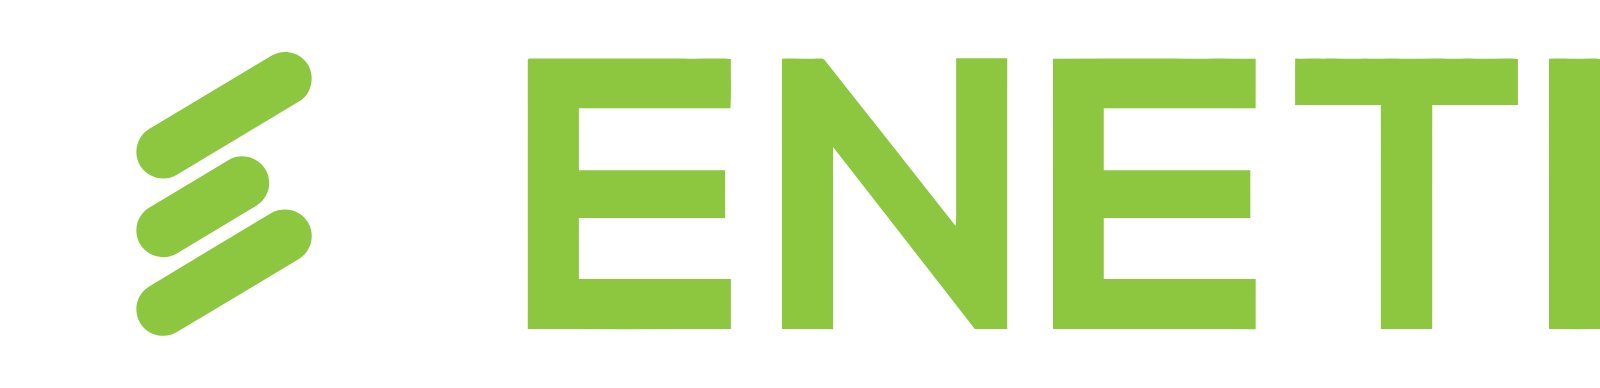 Eneti logo grand pour les fonds sombres (PNG transparent)